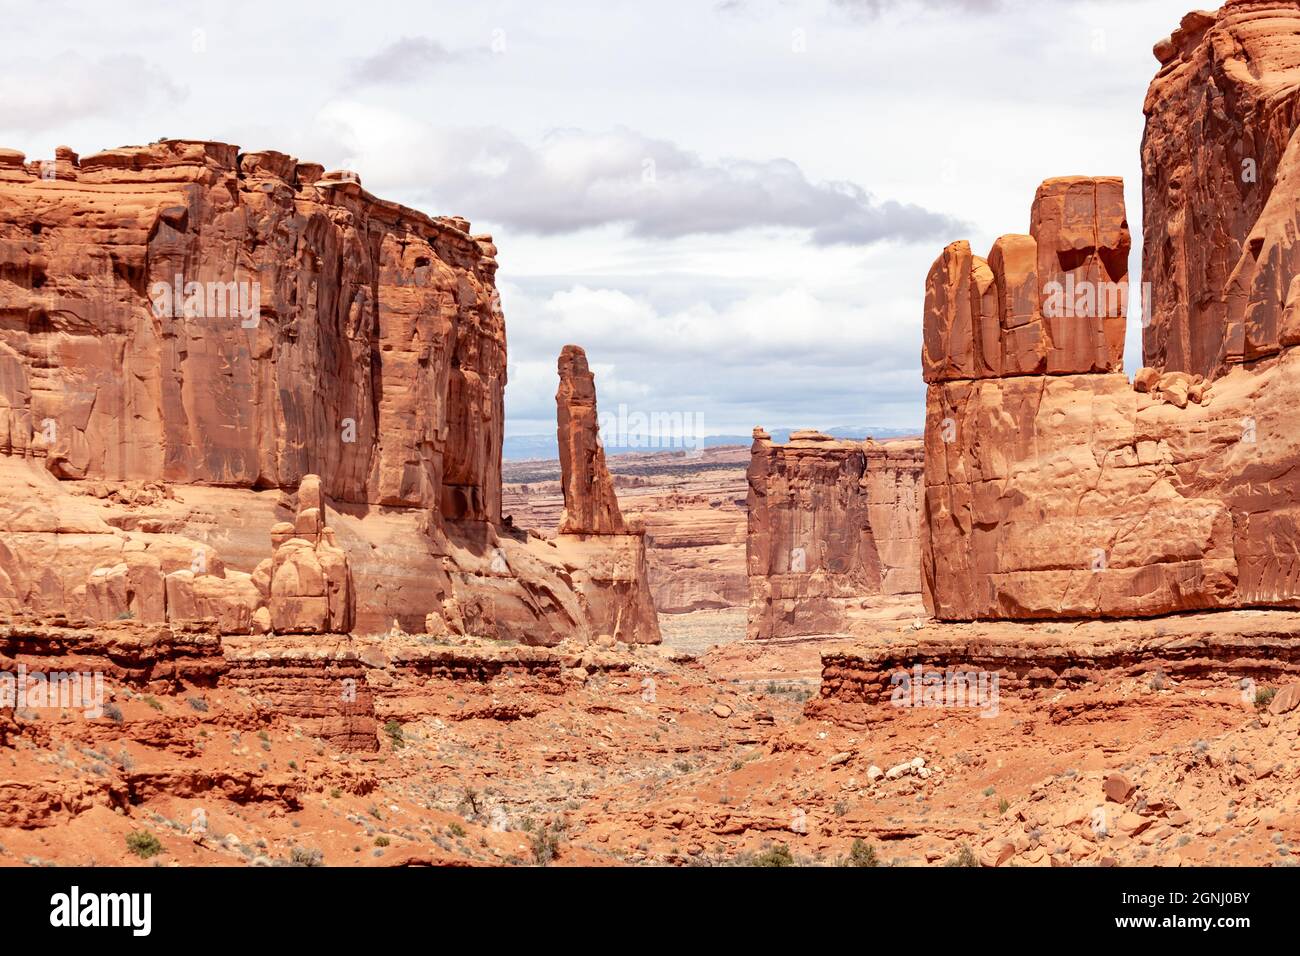 TROIS GOSSIPS, BREBIS ROCK et TOURS DE PALAIS DE JUSTICE arches parc national Desert rock vista moab utah usa Banque D'Images